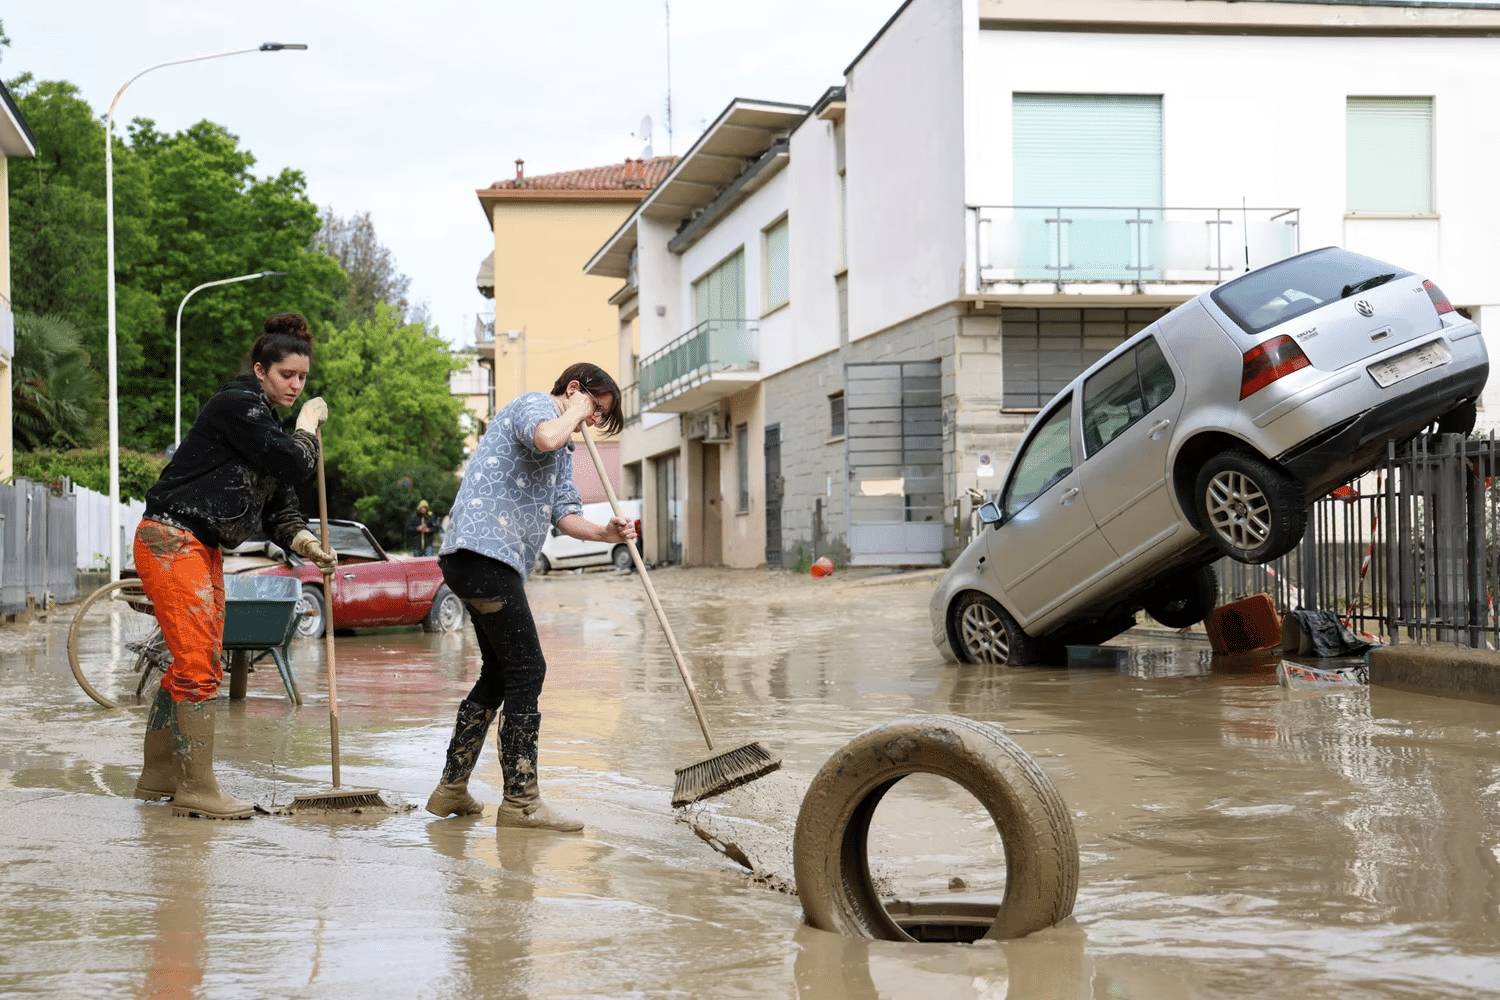 Жители убирают грязь и мусор после наводнения / ©Claudia Greco / Reuters